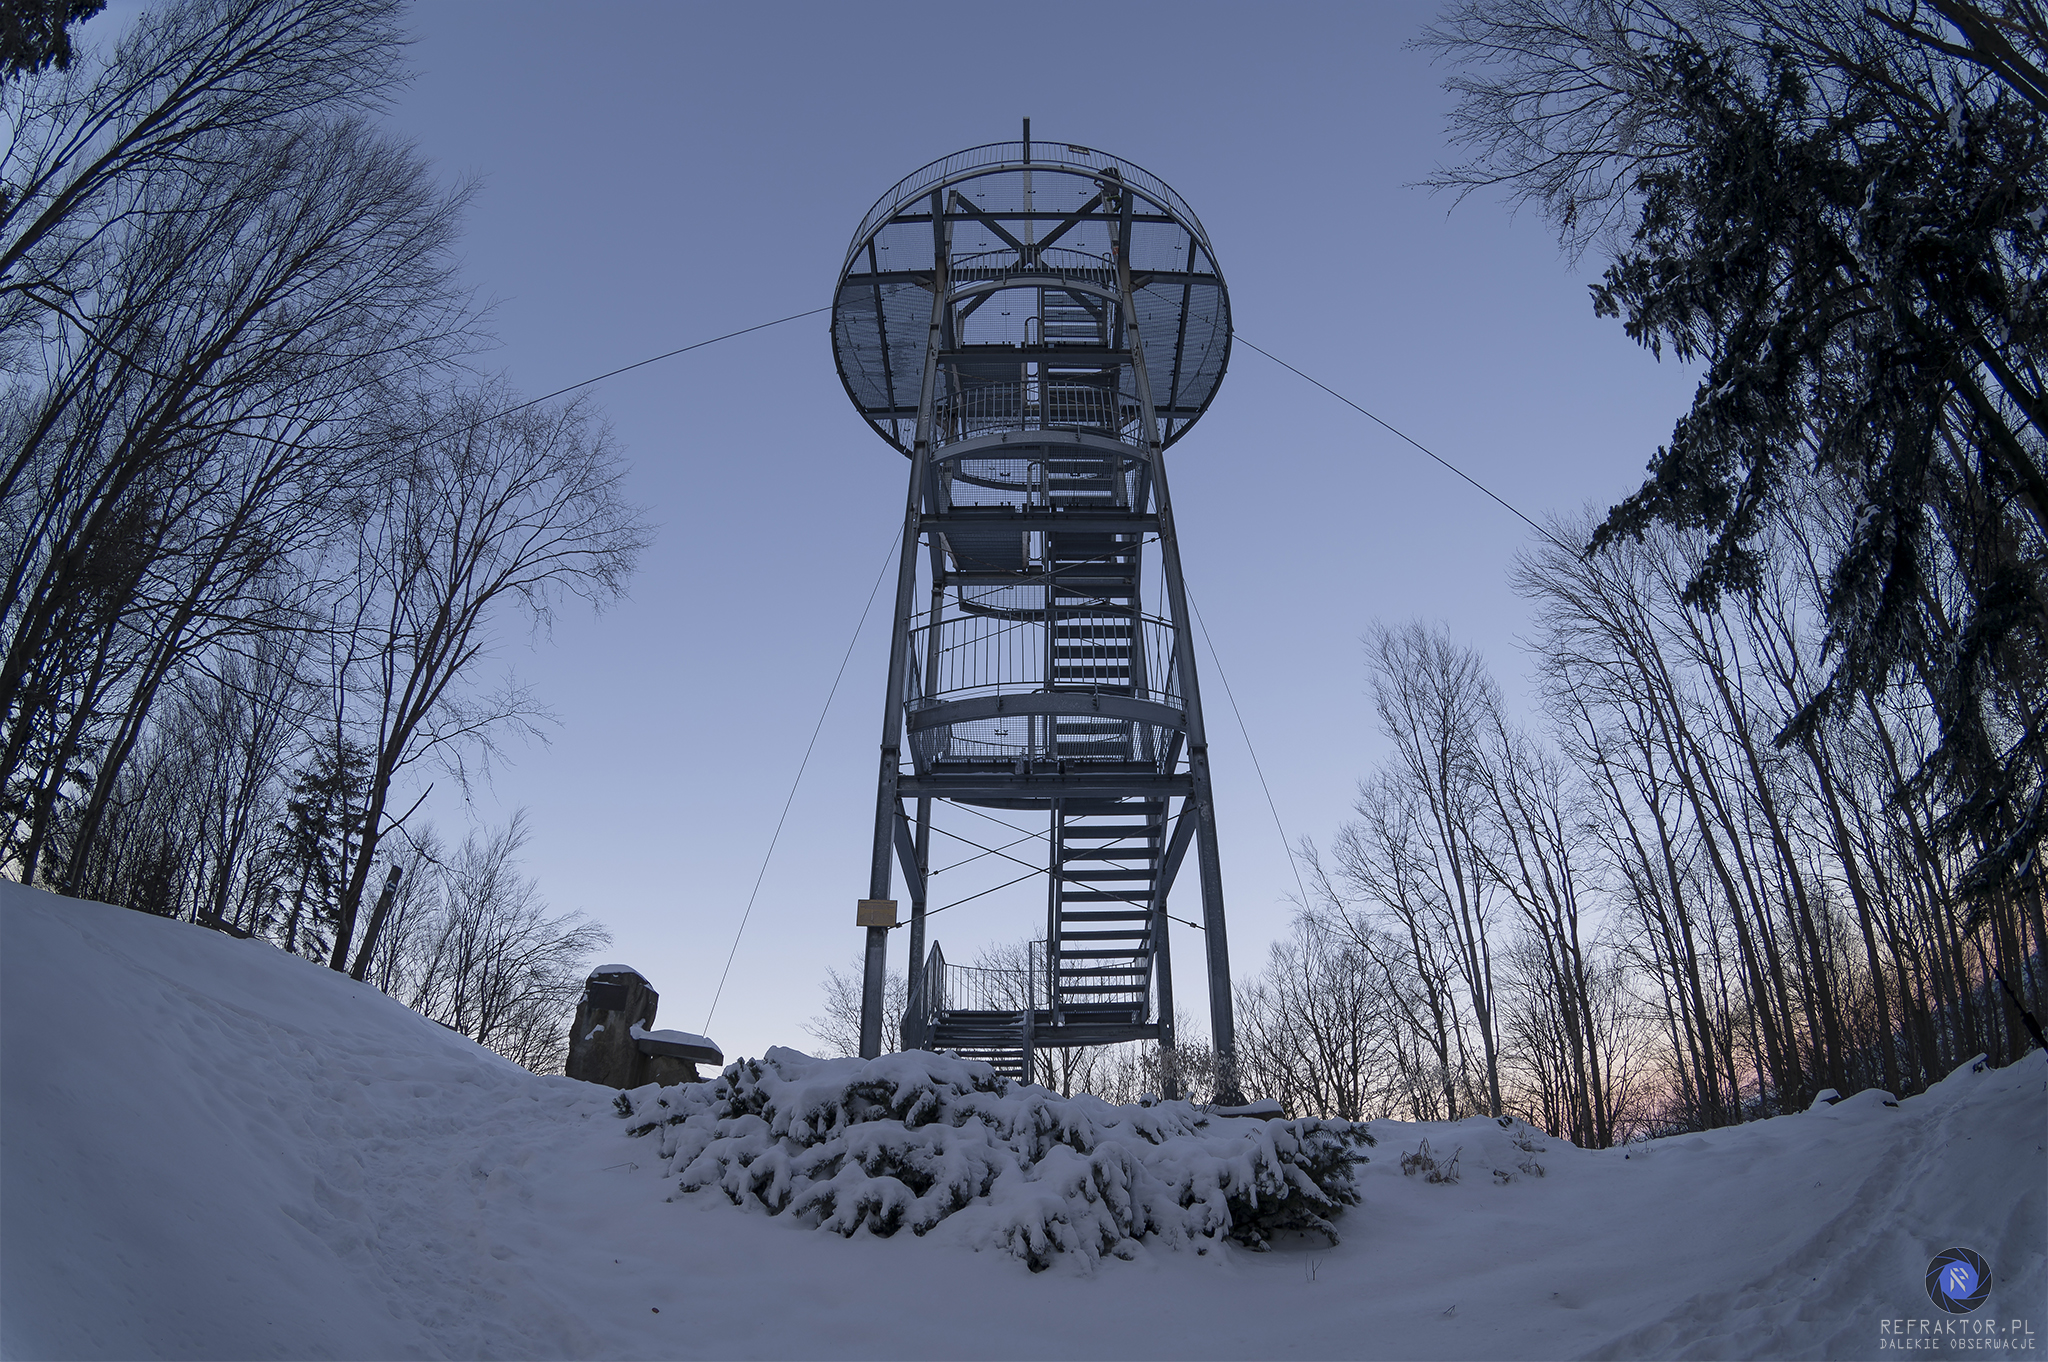 Metalowa wieża na szczycie Jaworzy, stabilizowana stalowymi odciągami. Wieża jest zwieńczona krzyżem.